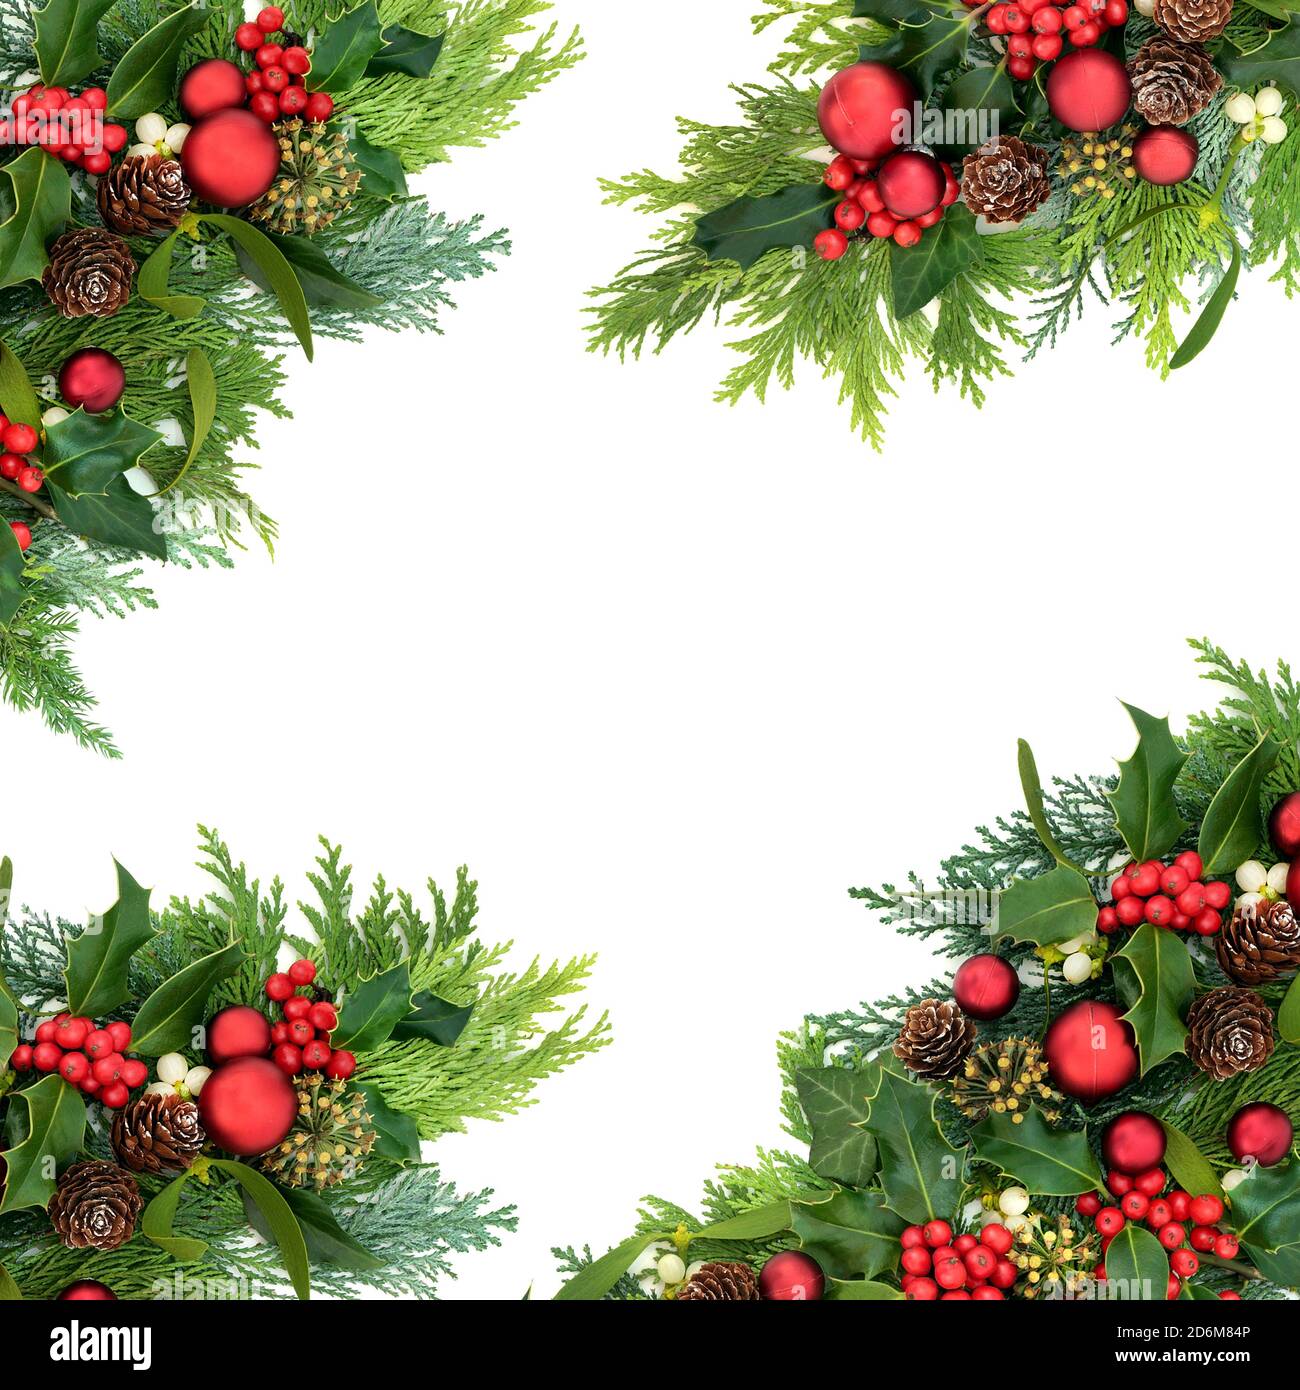 Bordure abstraite de Noël pour la période des fêtes avec des décorations de boules rouges et de la verdure hivernale de houx, de lierre, de GUI, de cyprès de cèdre et de cônes de pin. Banque D'Images